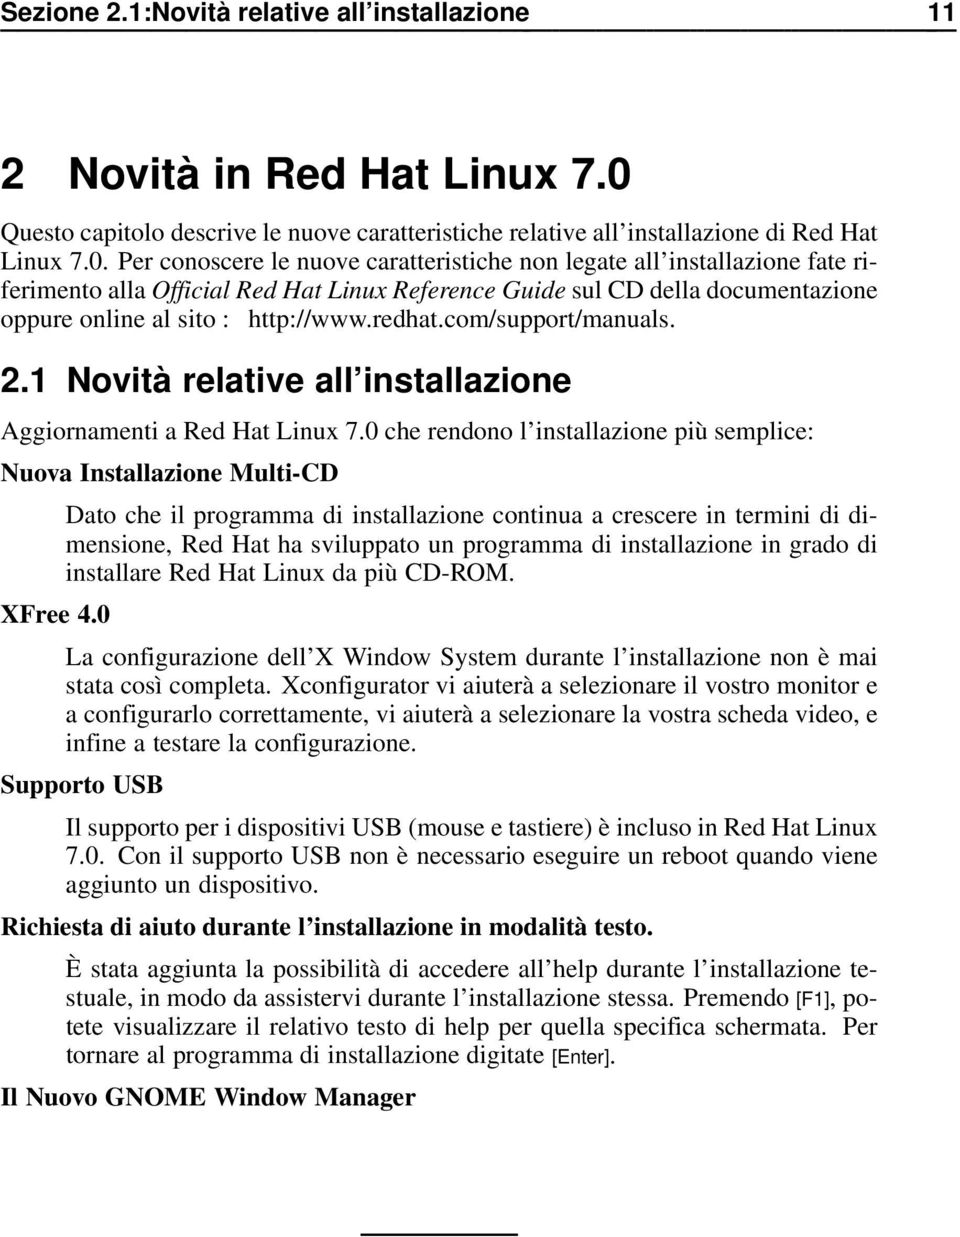 Per conoscere le nuove caratteristiche non legate all installazione fate riferimento alla Official Red Hat Linux Reference Guide sul CD della documentazione oppure online al sito : http://www.redhat.